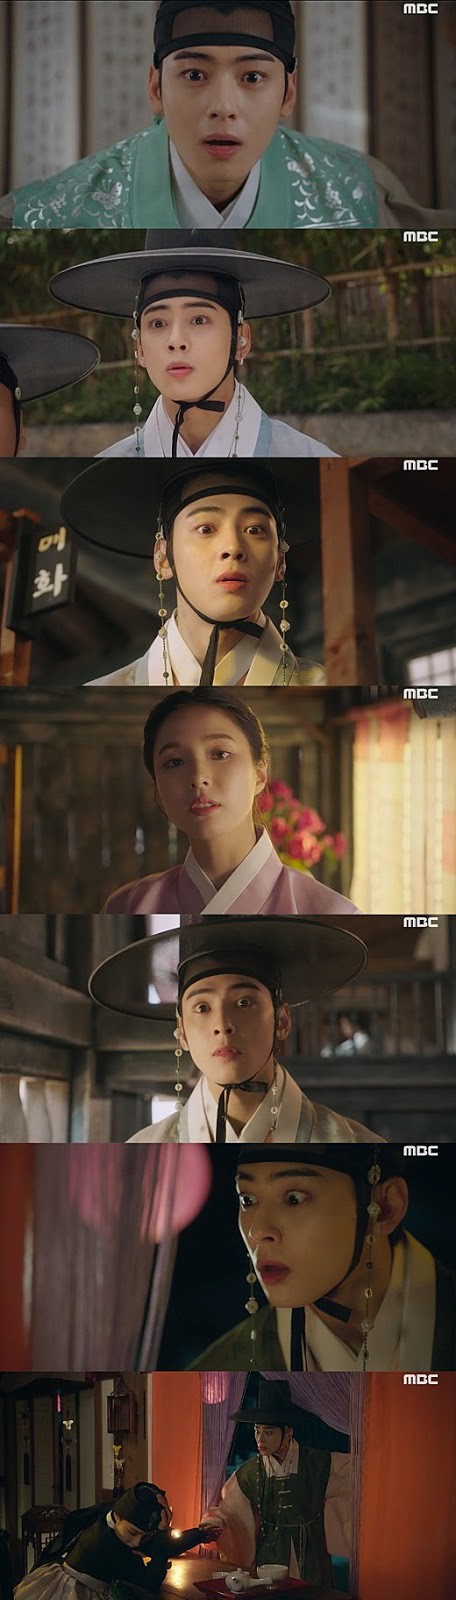 Diễn xuất thần sầu của Cha Eun Woo gây hỗn chiến: Kẻ chê bai thậm tệ, người hết lời bênh vực - Ảnh 2.